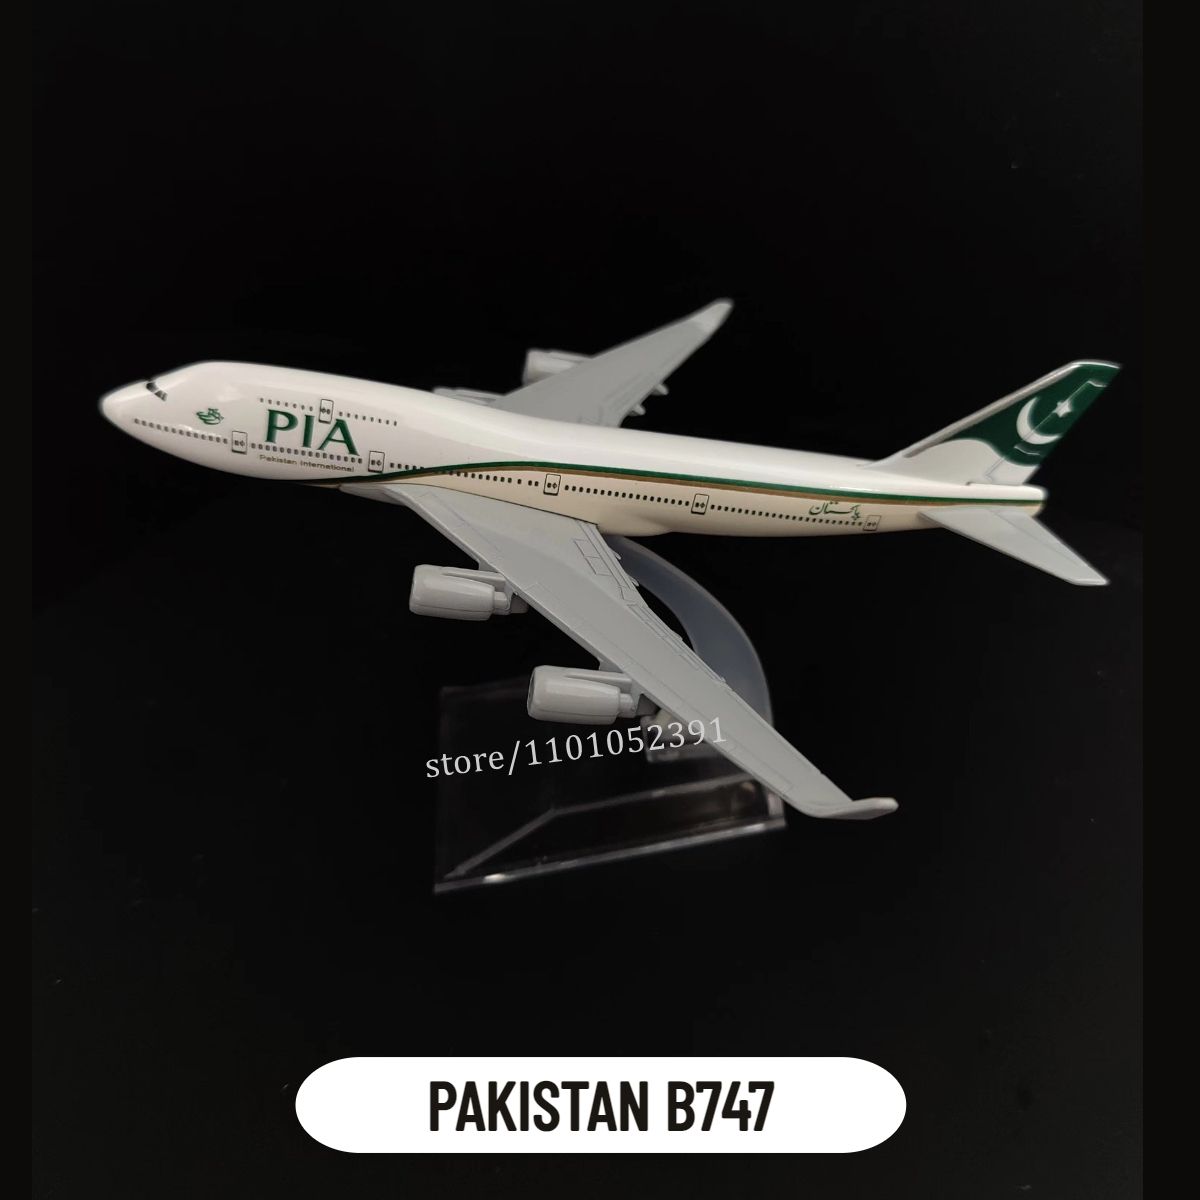 89. Pakistan B747